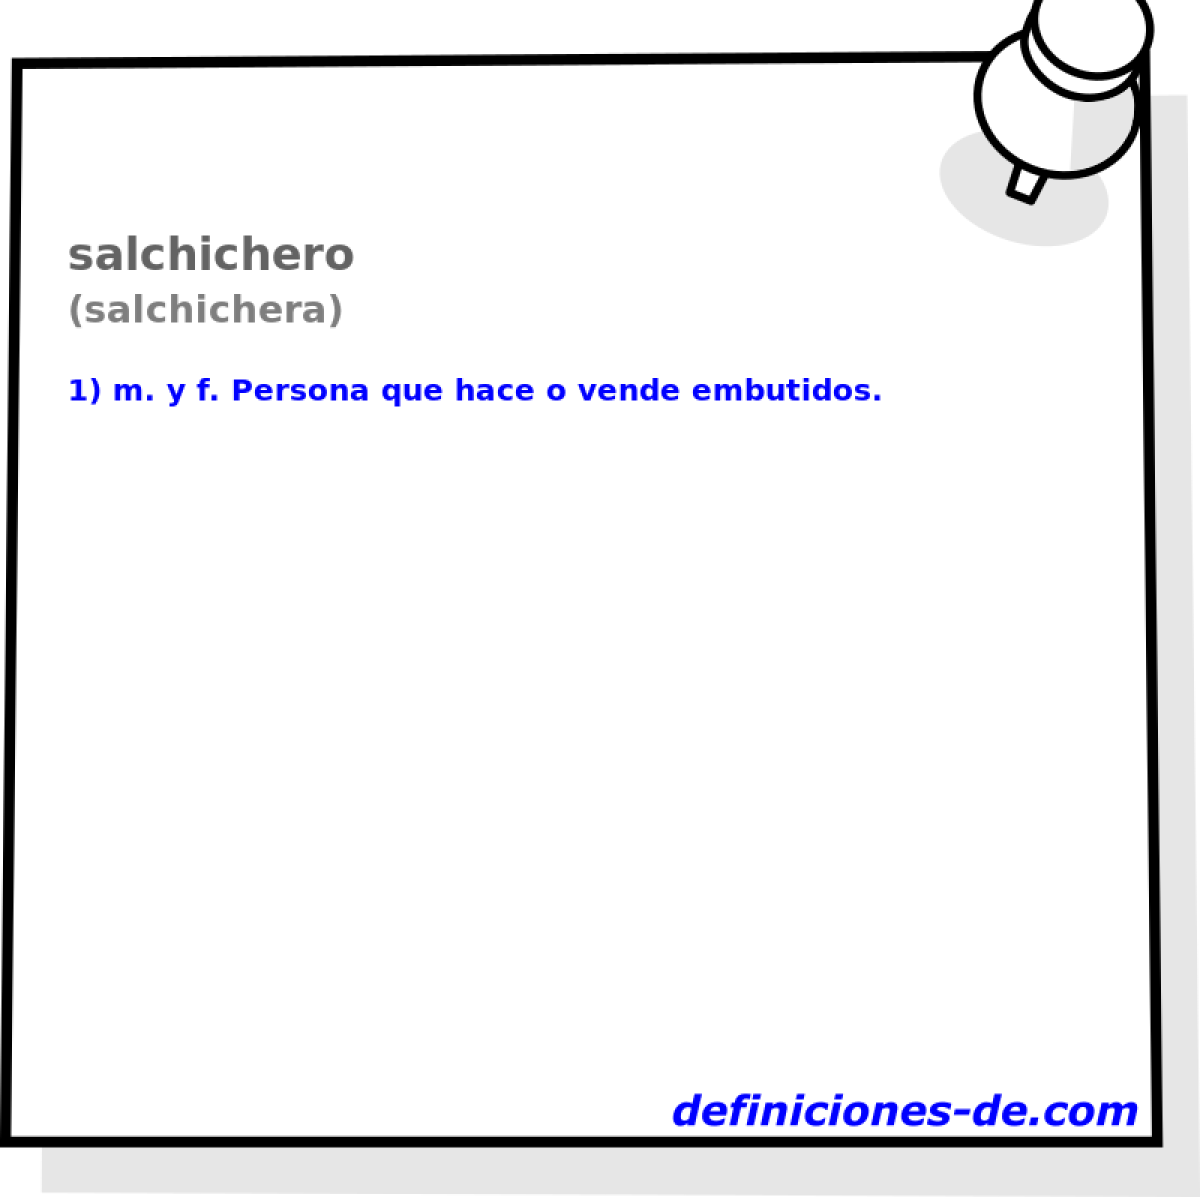 salchichero (salchichera)